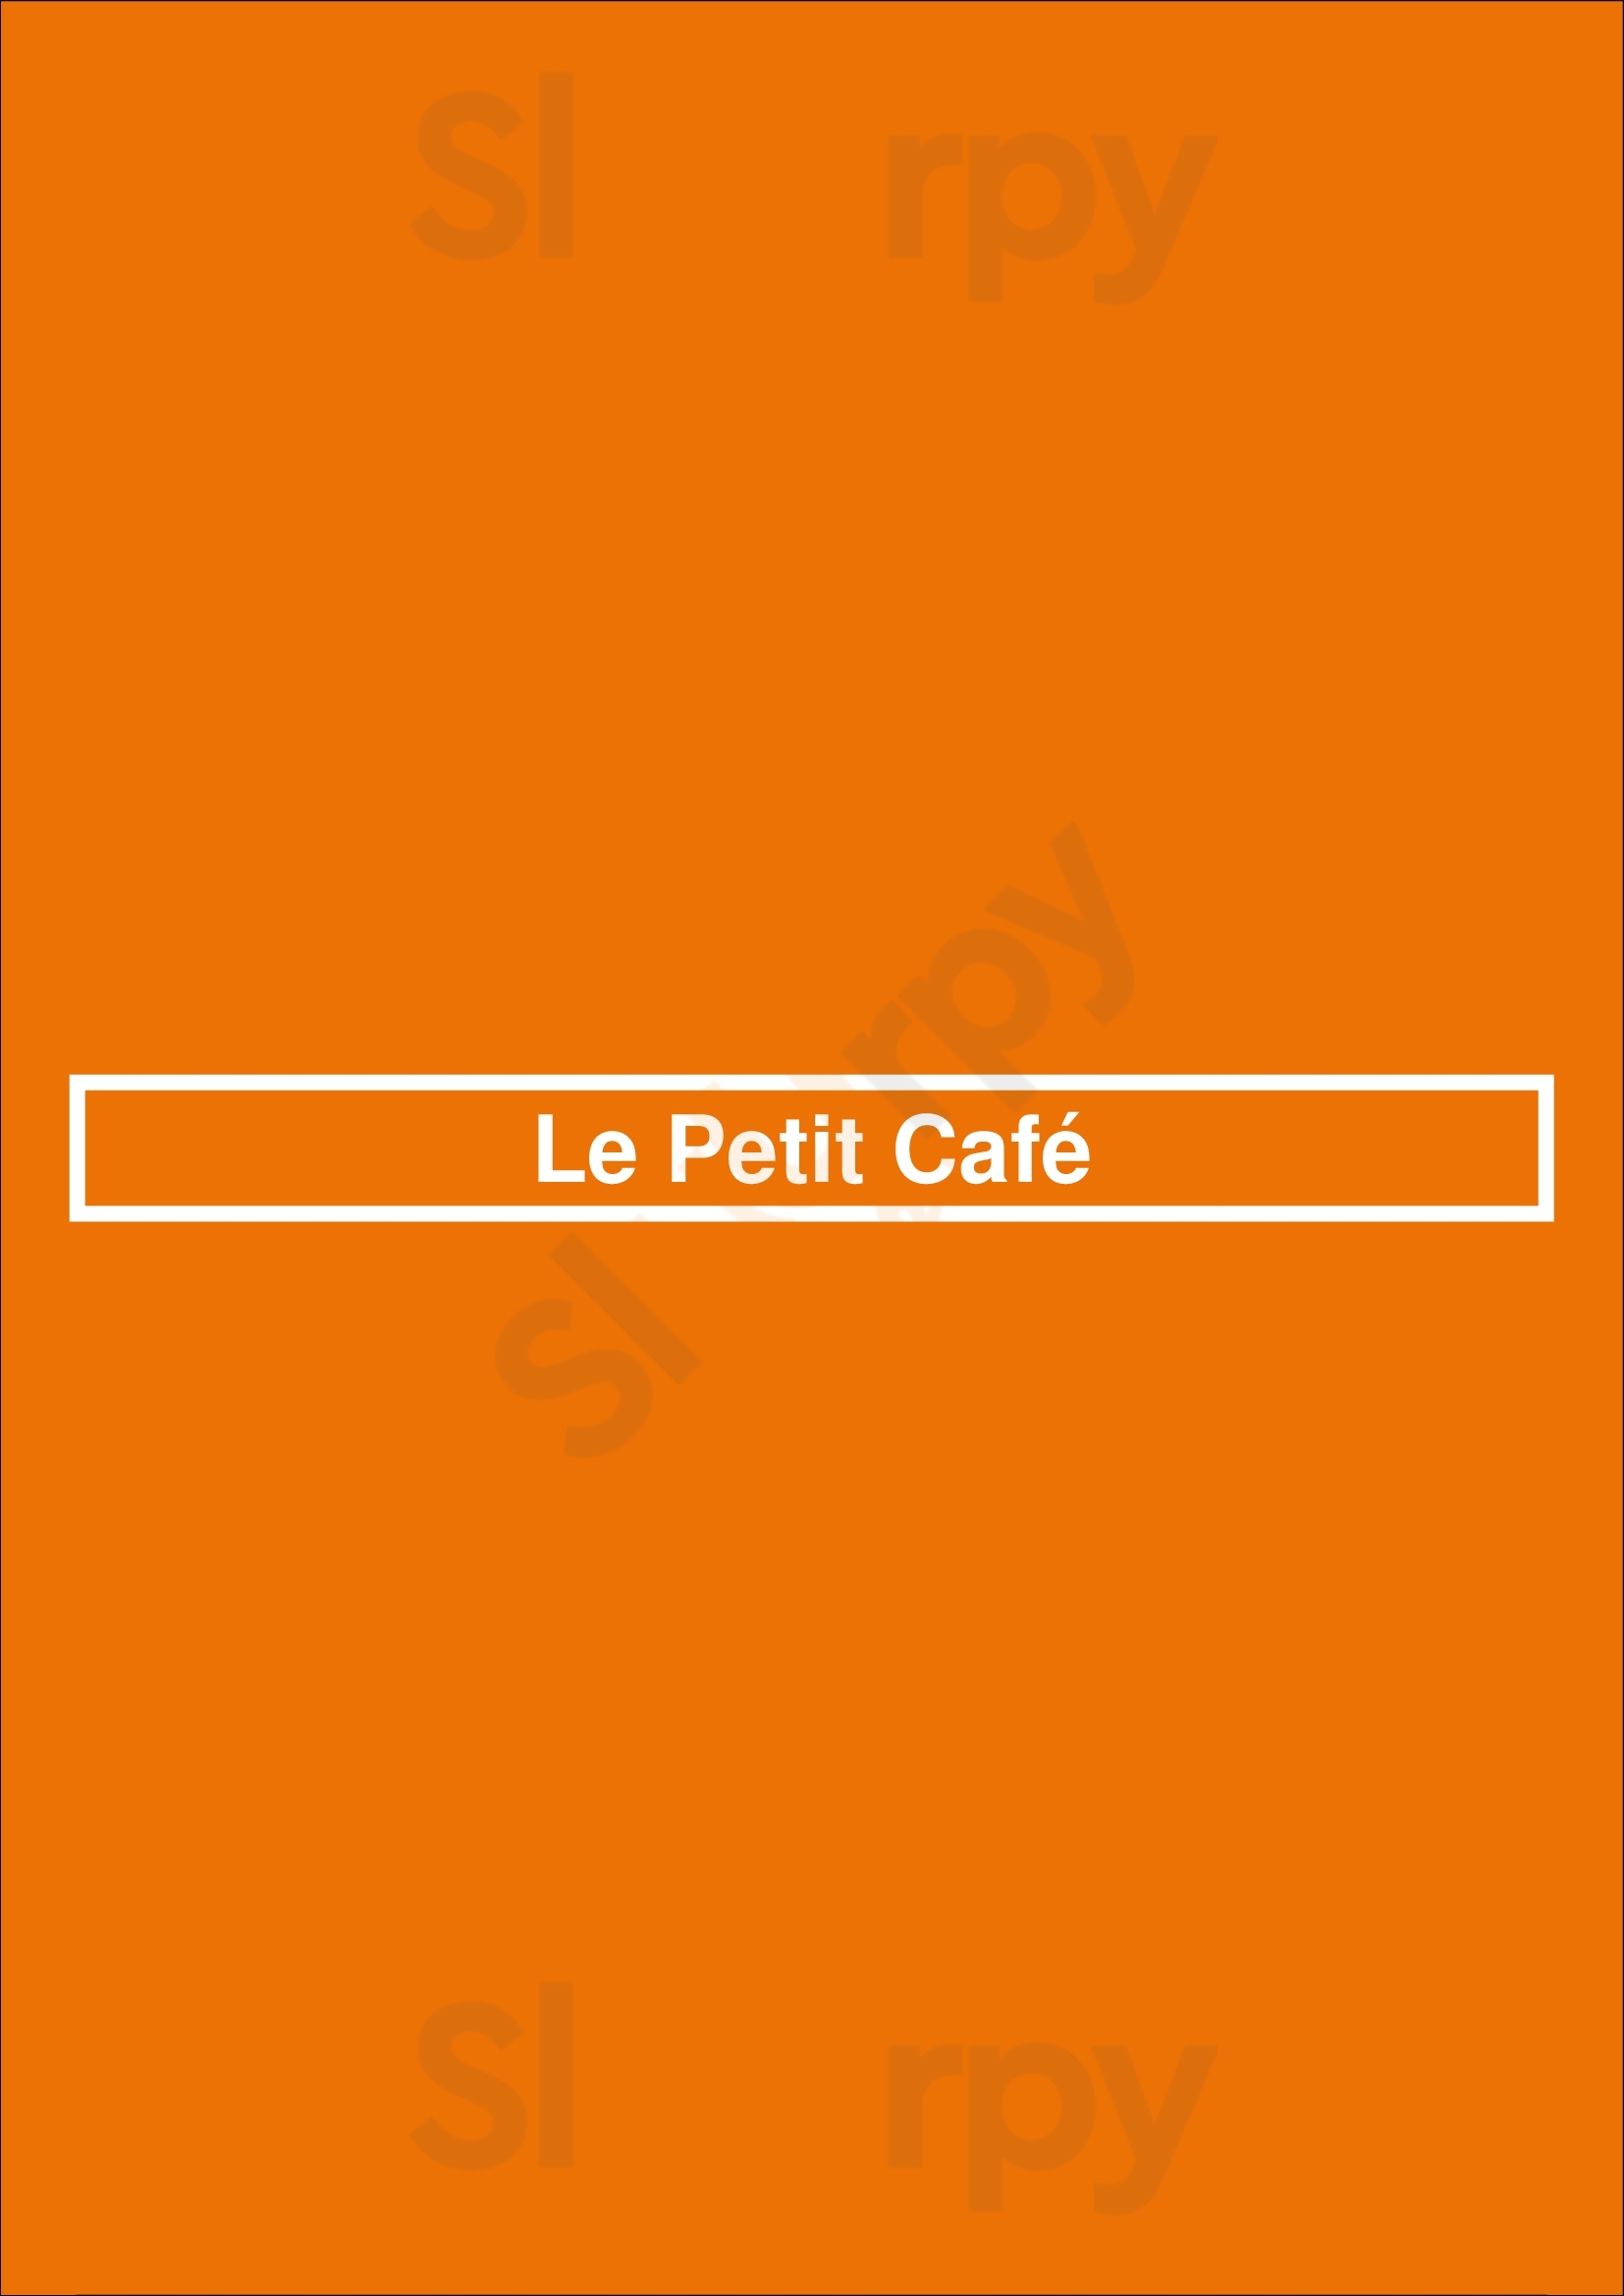 Le Petit Café Lisboa Menu - 1